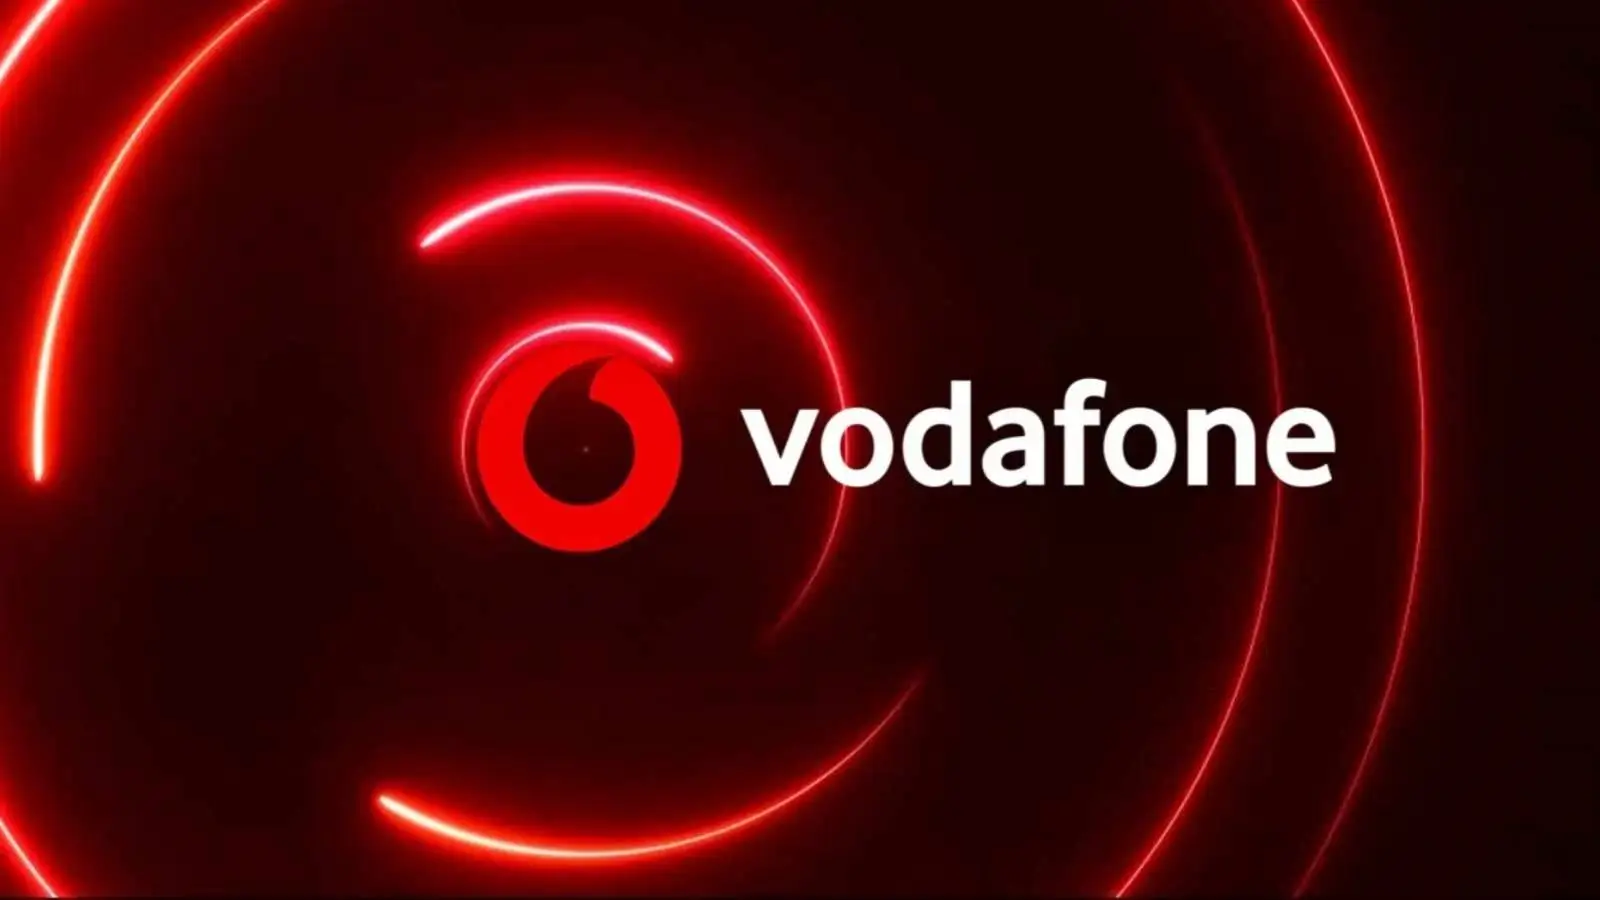 Vodafone GRANDE Nouvelles Des millions de clients dans toute la Roumanie